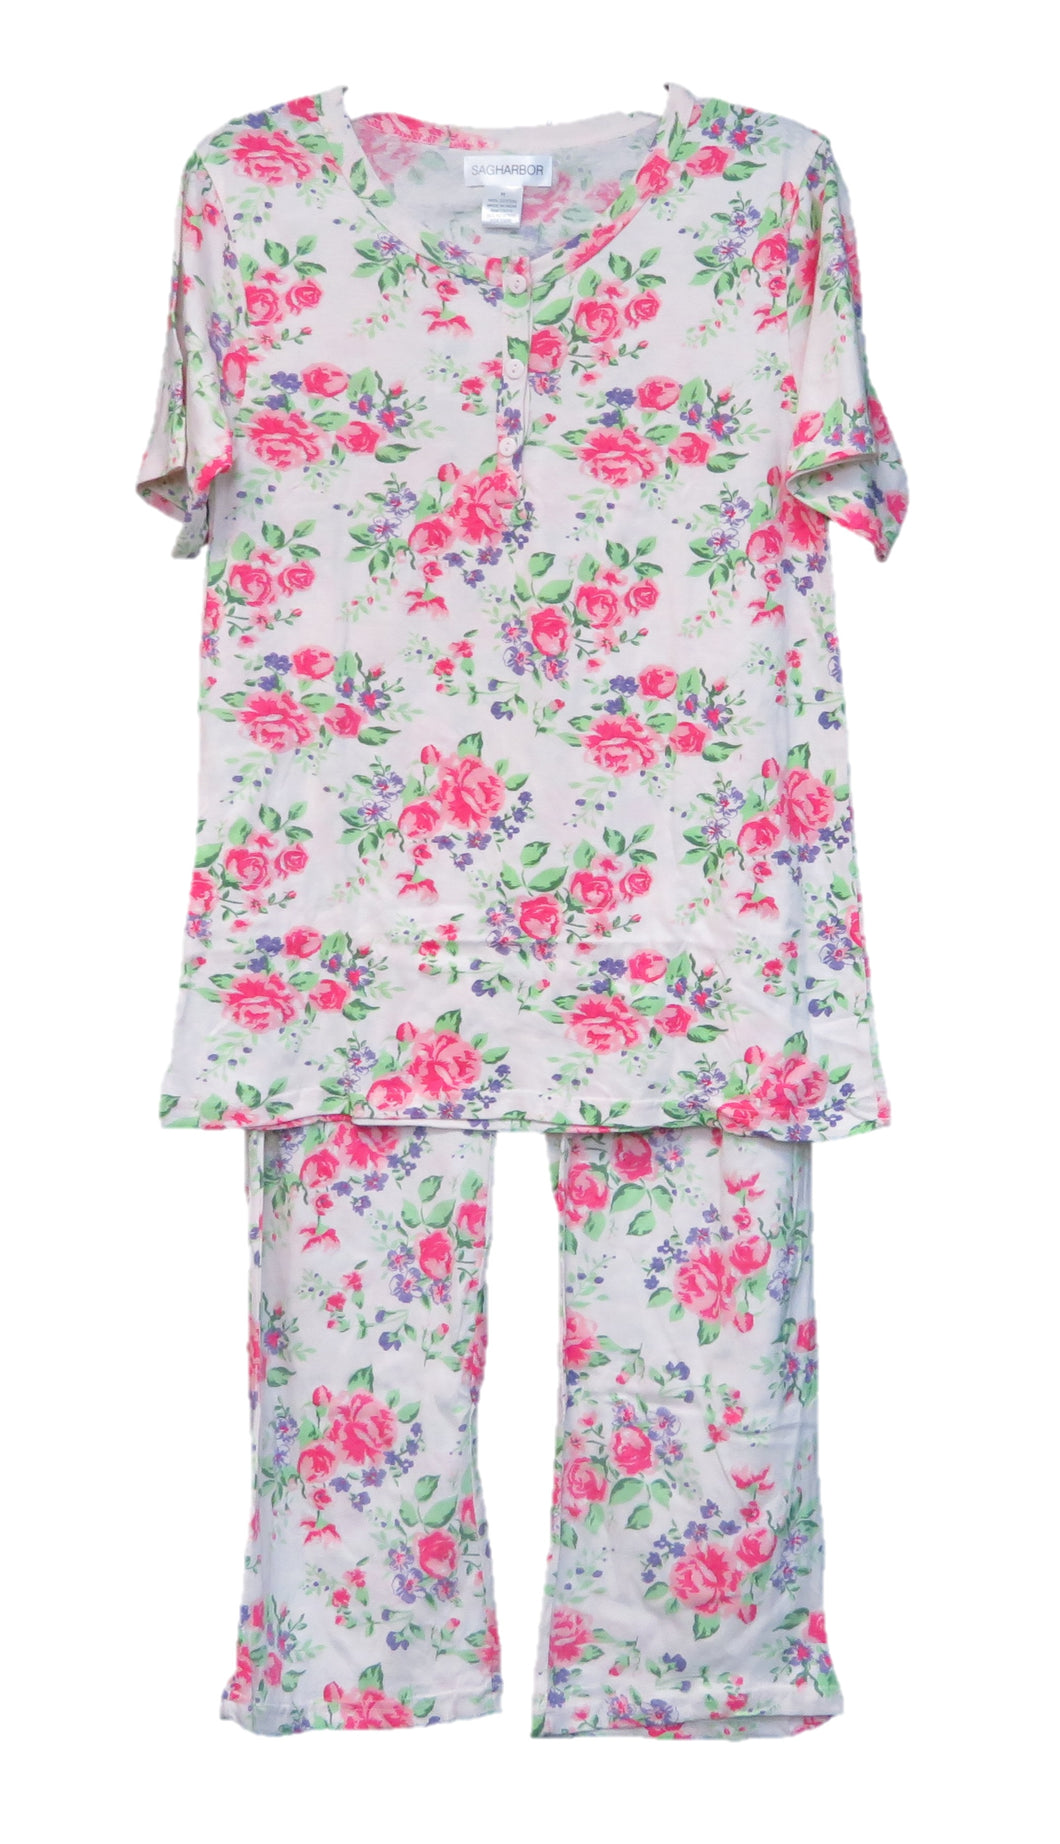 Sag Harbor Sleepwear Pj Sets 100% Cotton Style N98104